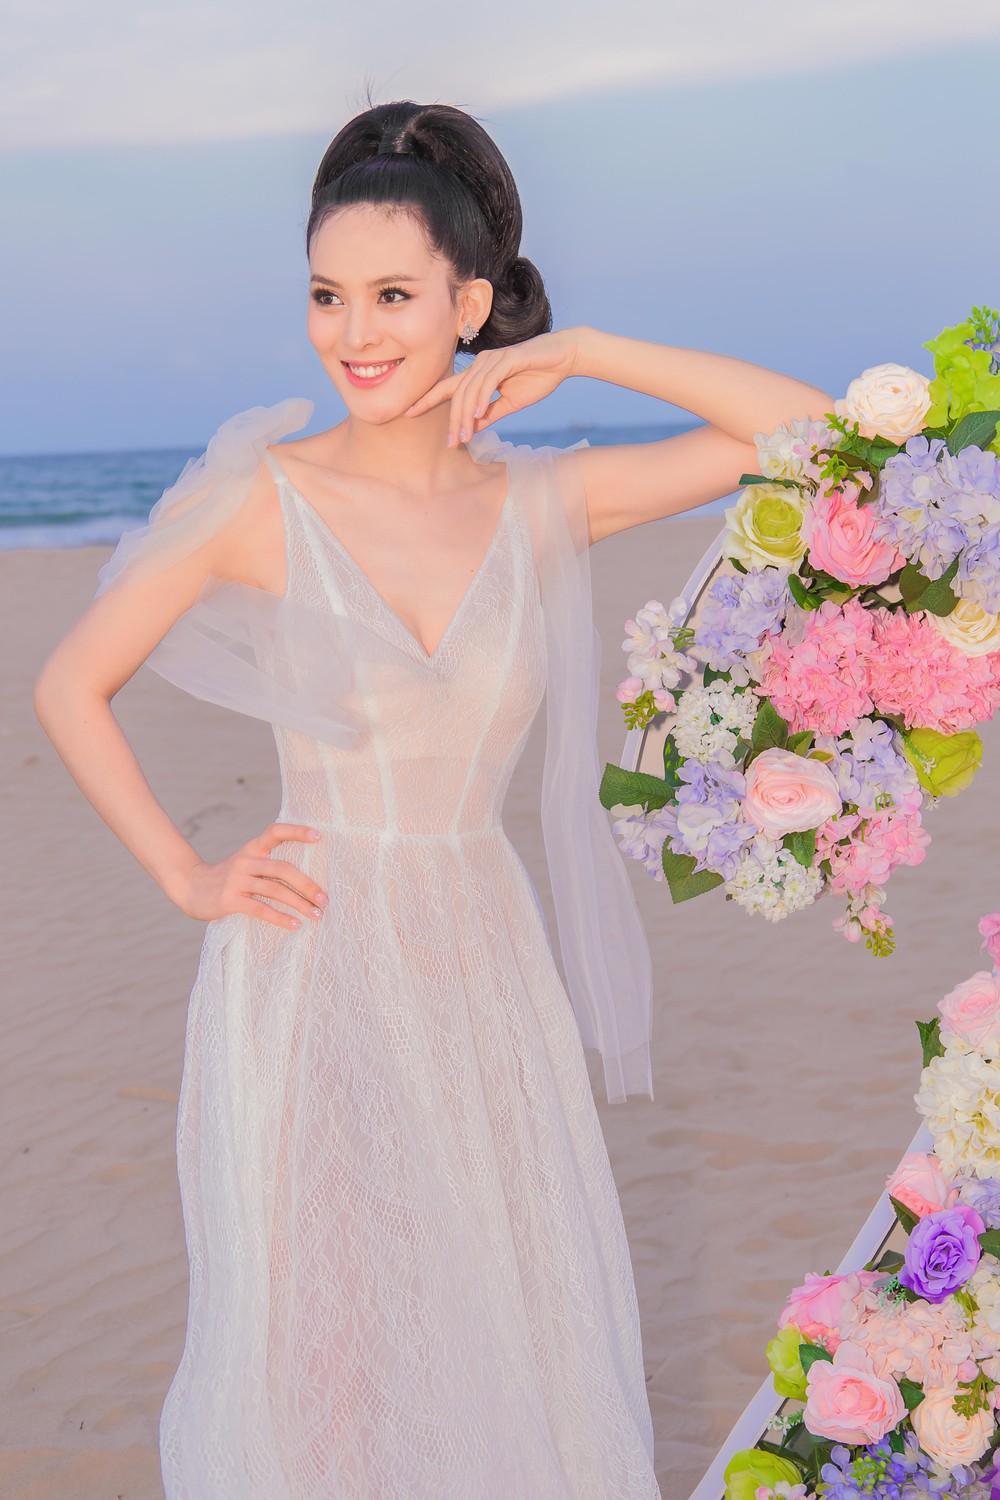 Người đẹp Sang Lê đón sinh nhật sang chảnh trên bờ biển ở Phú Yên - Ảnh 6.